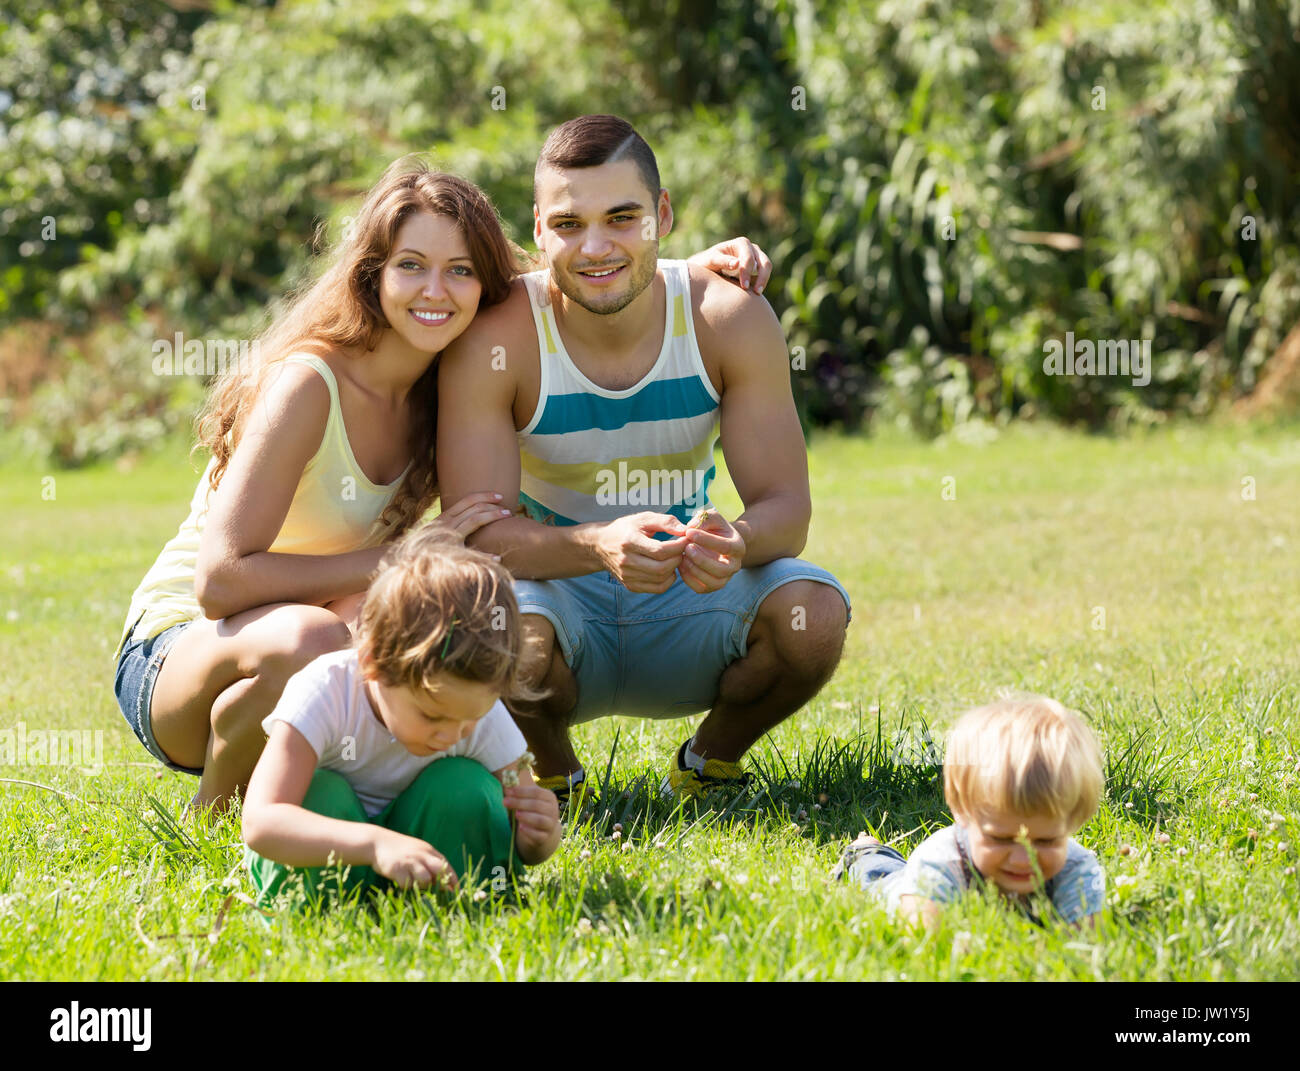 Happy smiling young famille de quatre personnes se reposant dans sunny summer park Banque D'Images